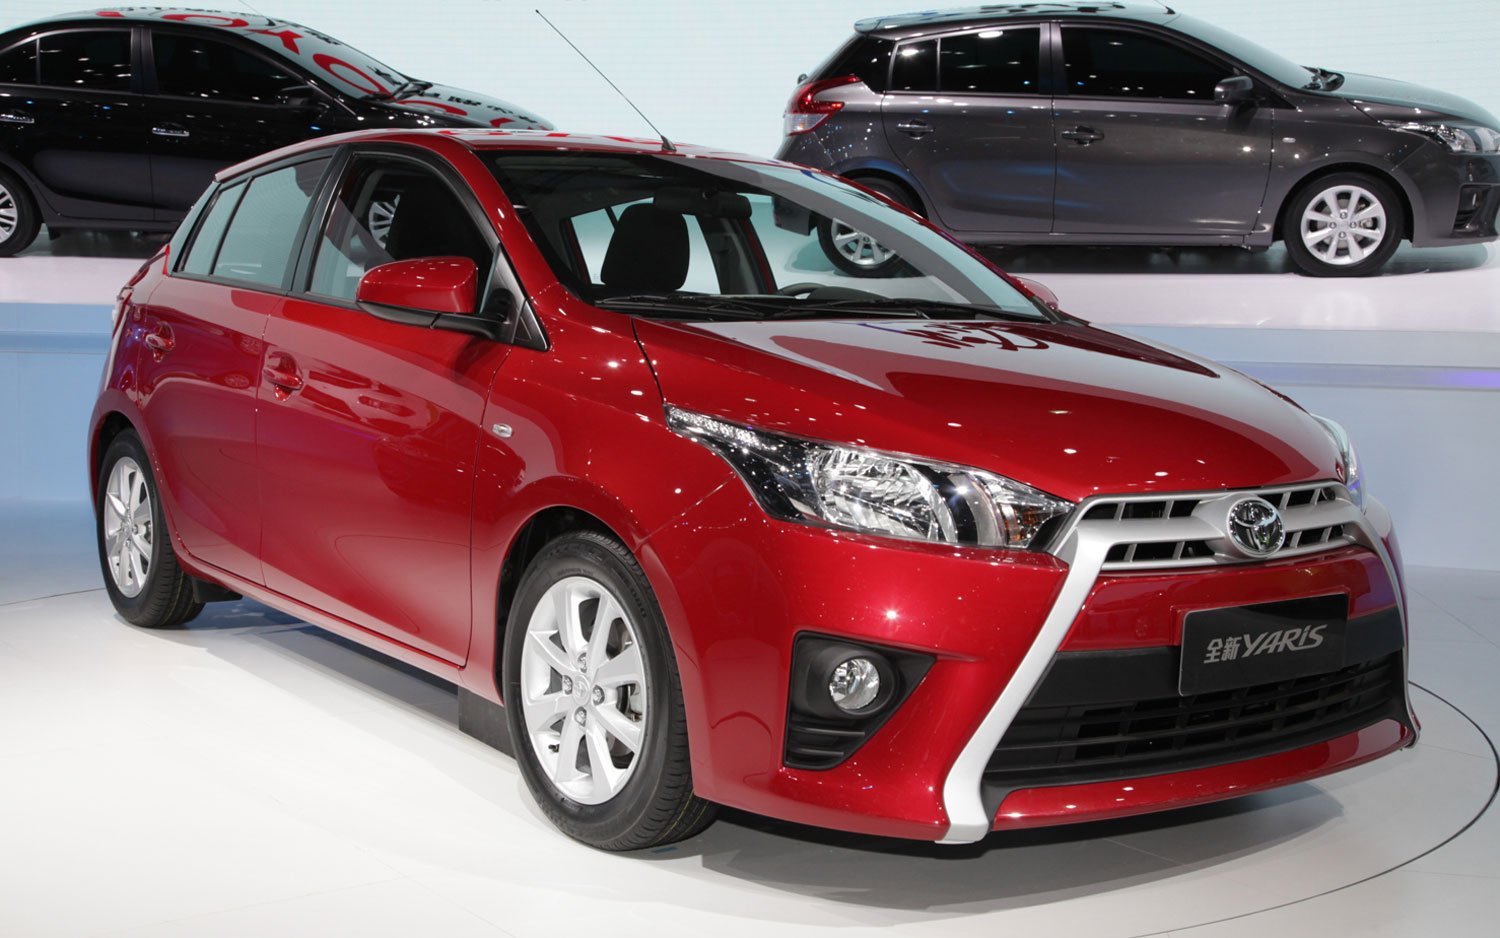 Bán xe ô tô Toyota Yaris đời 2014 giá rẻ chính hãng